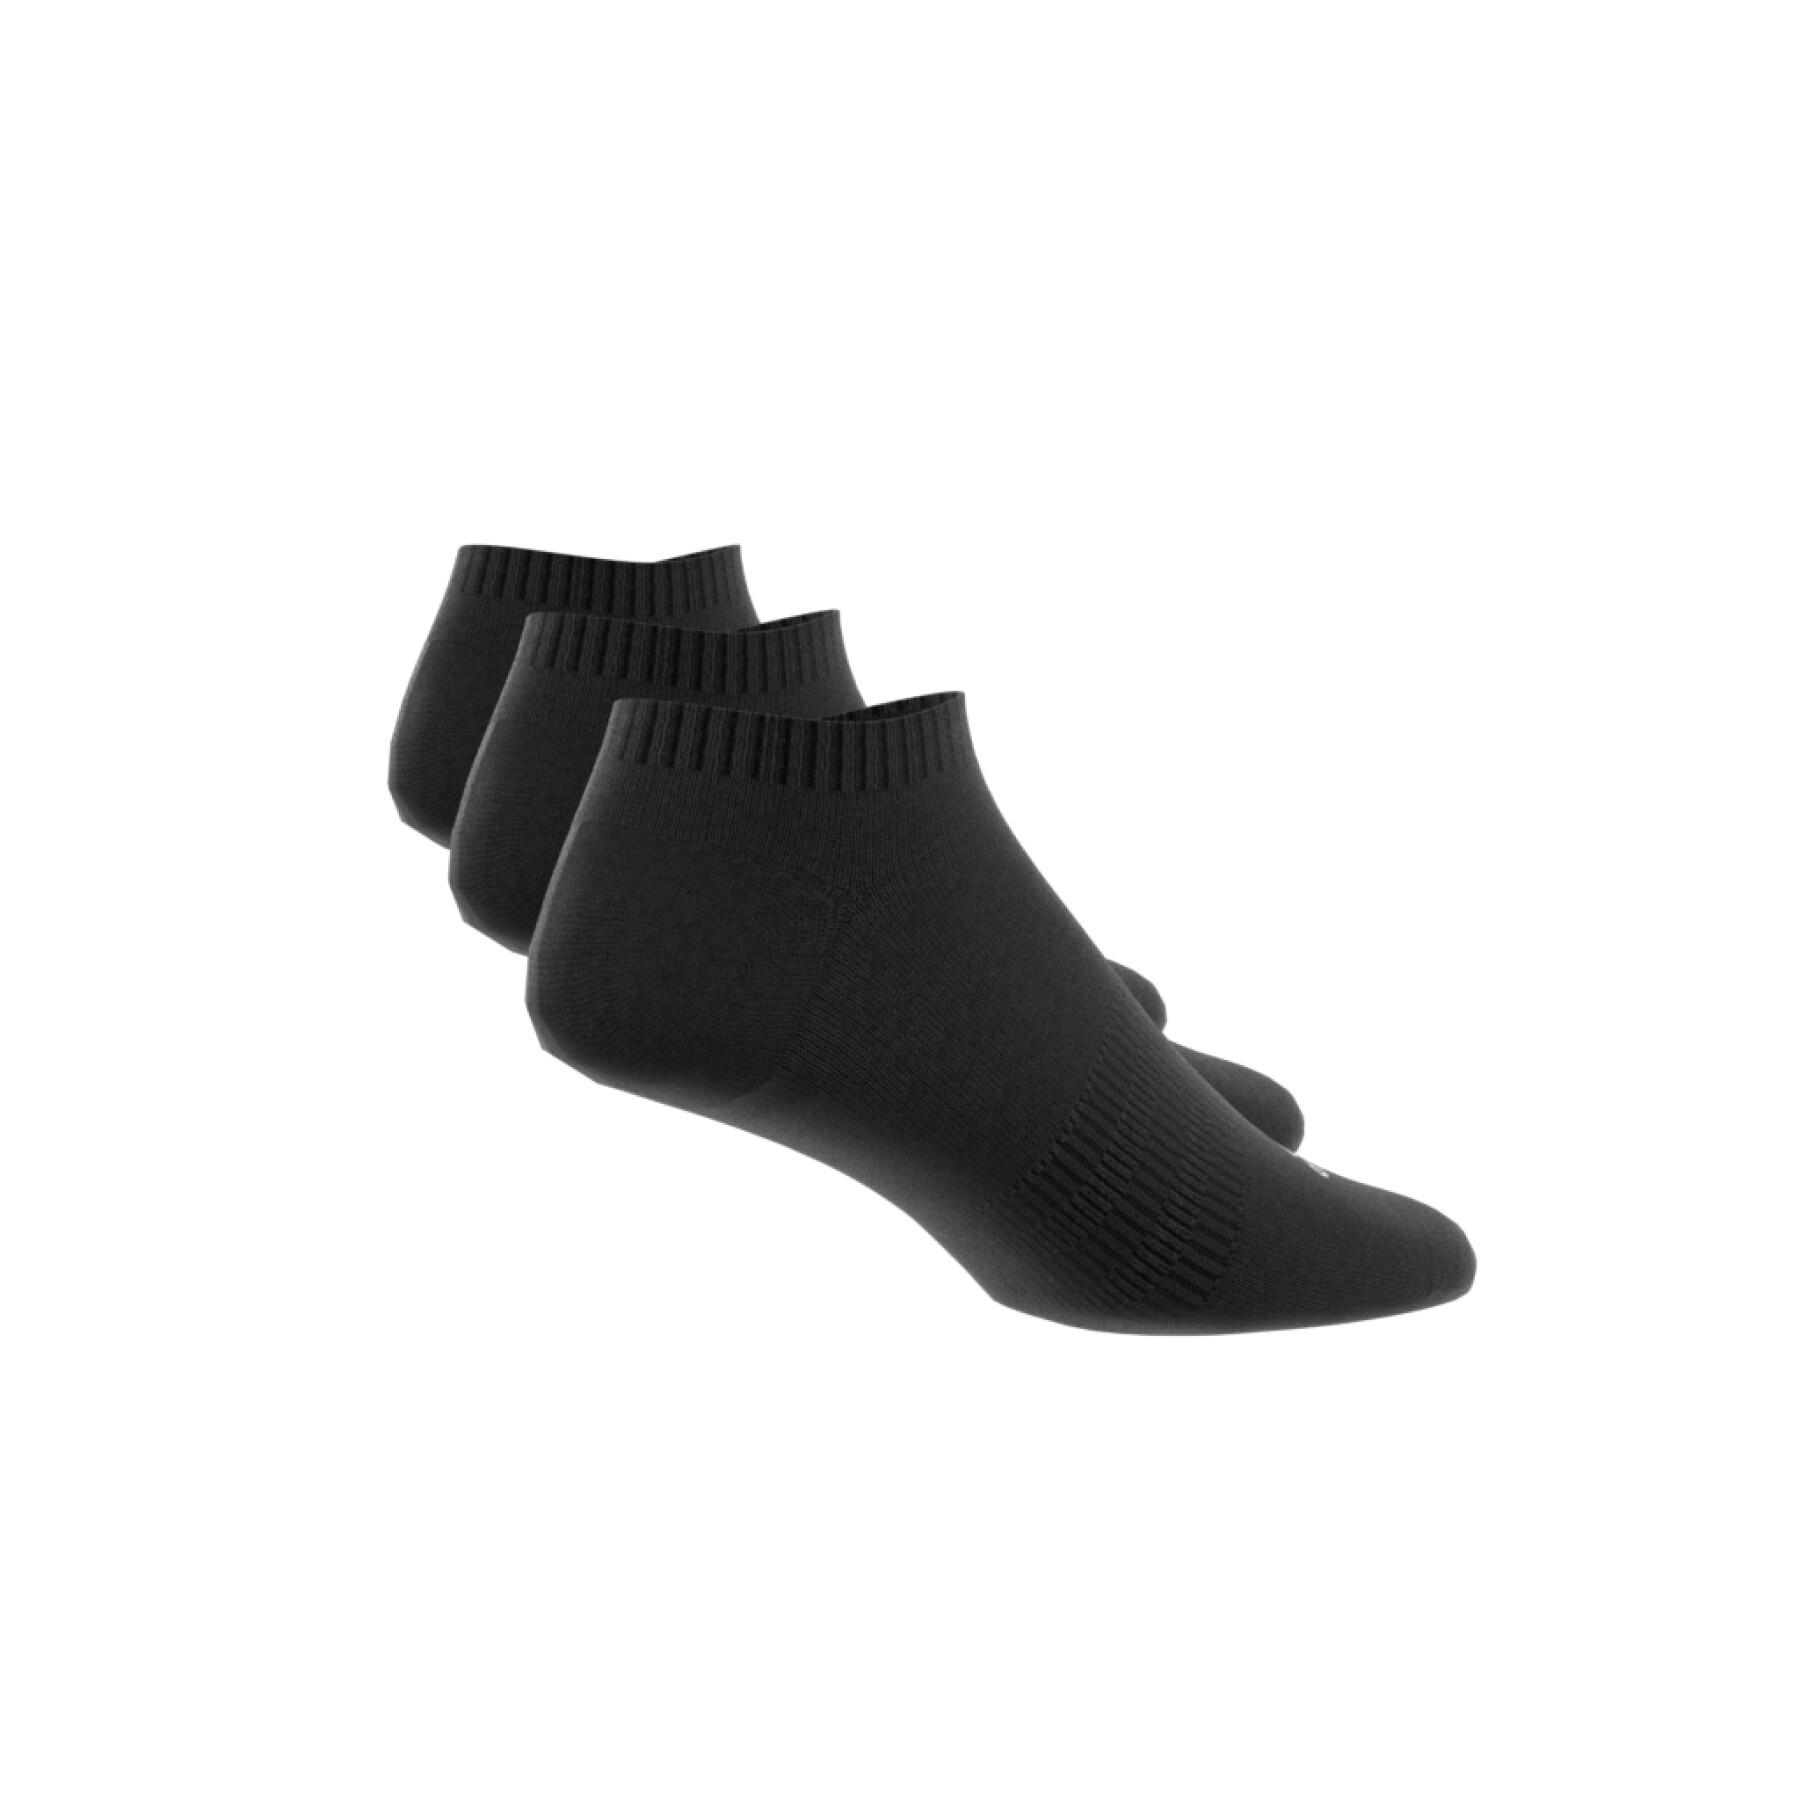 Low socks adidas (x3)